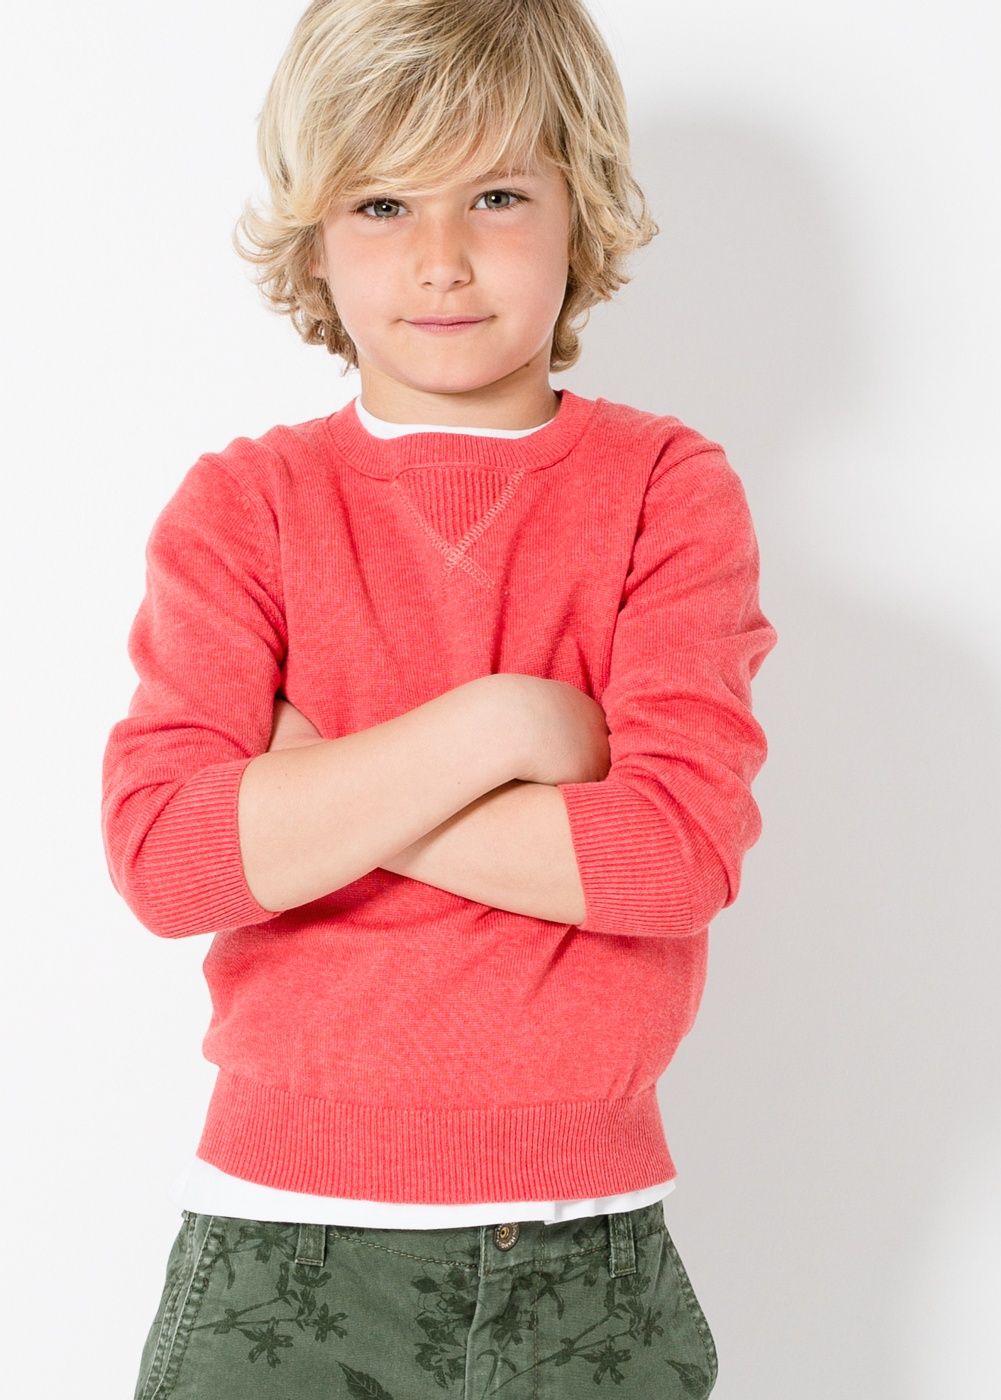 Детская стрижка мальчику с длинными волосами